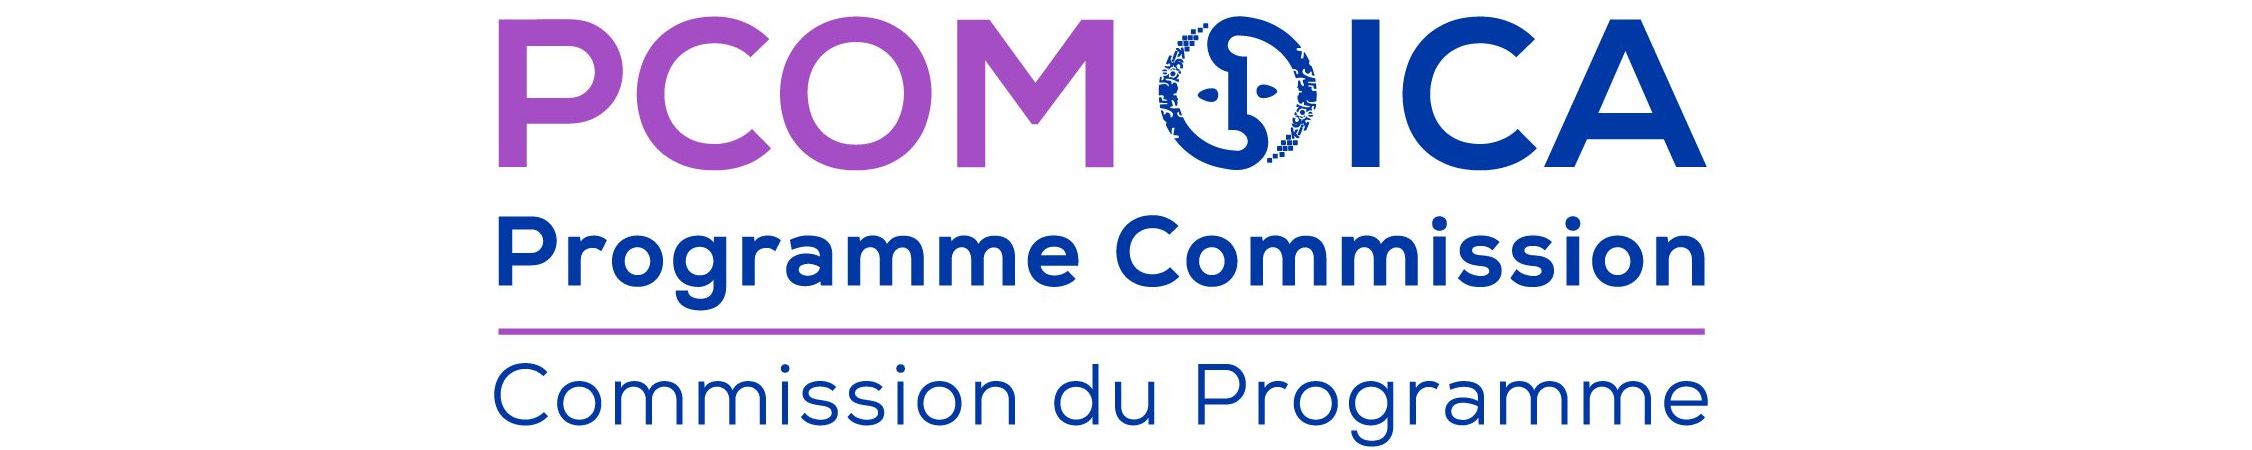 Le Conseil international des archives annonce l’élection des membres du PCOM